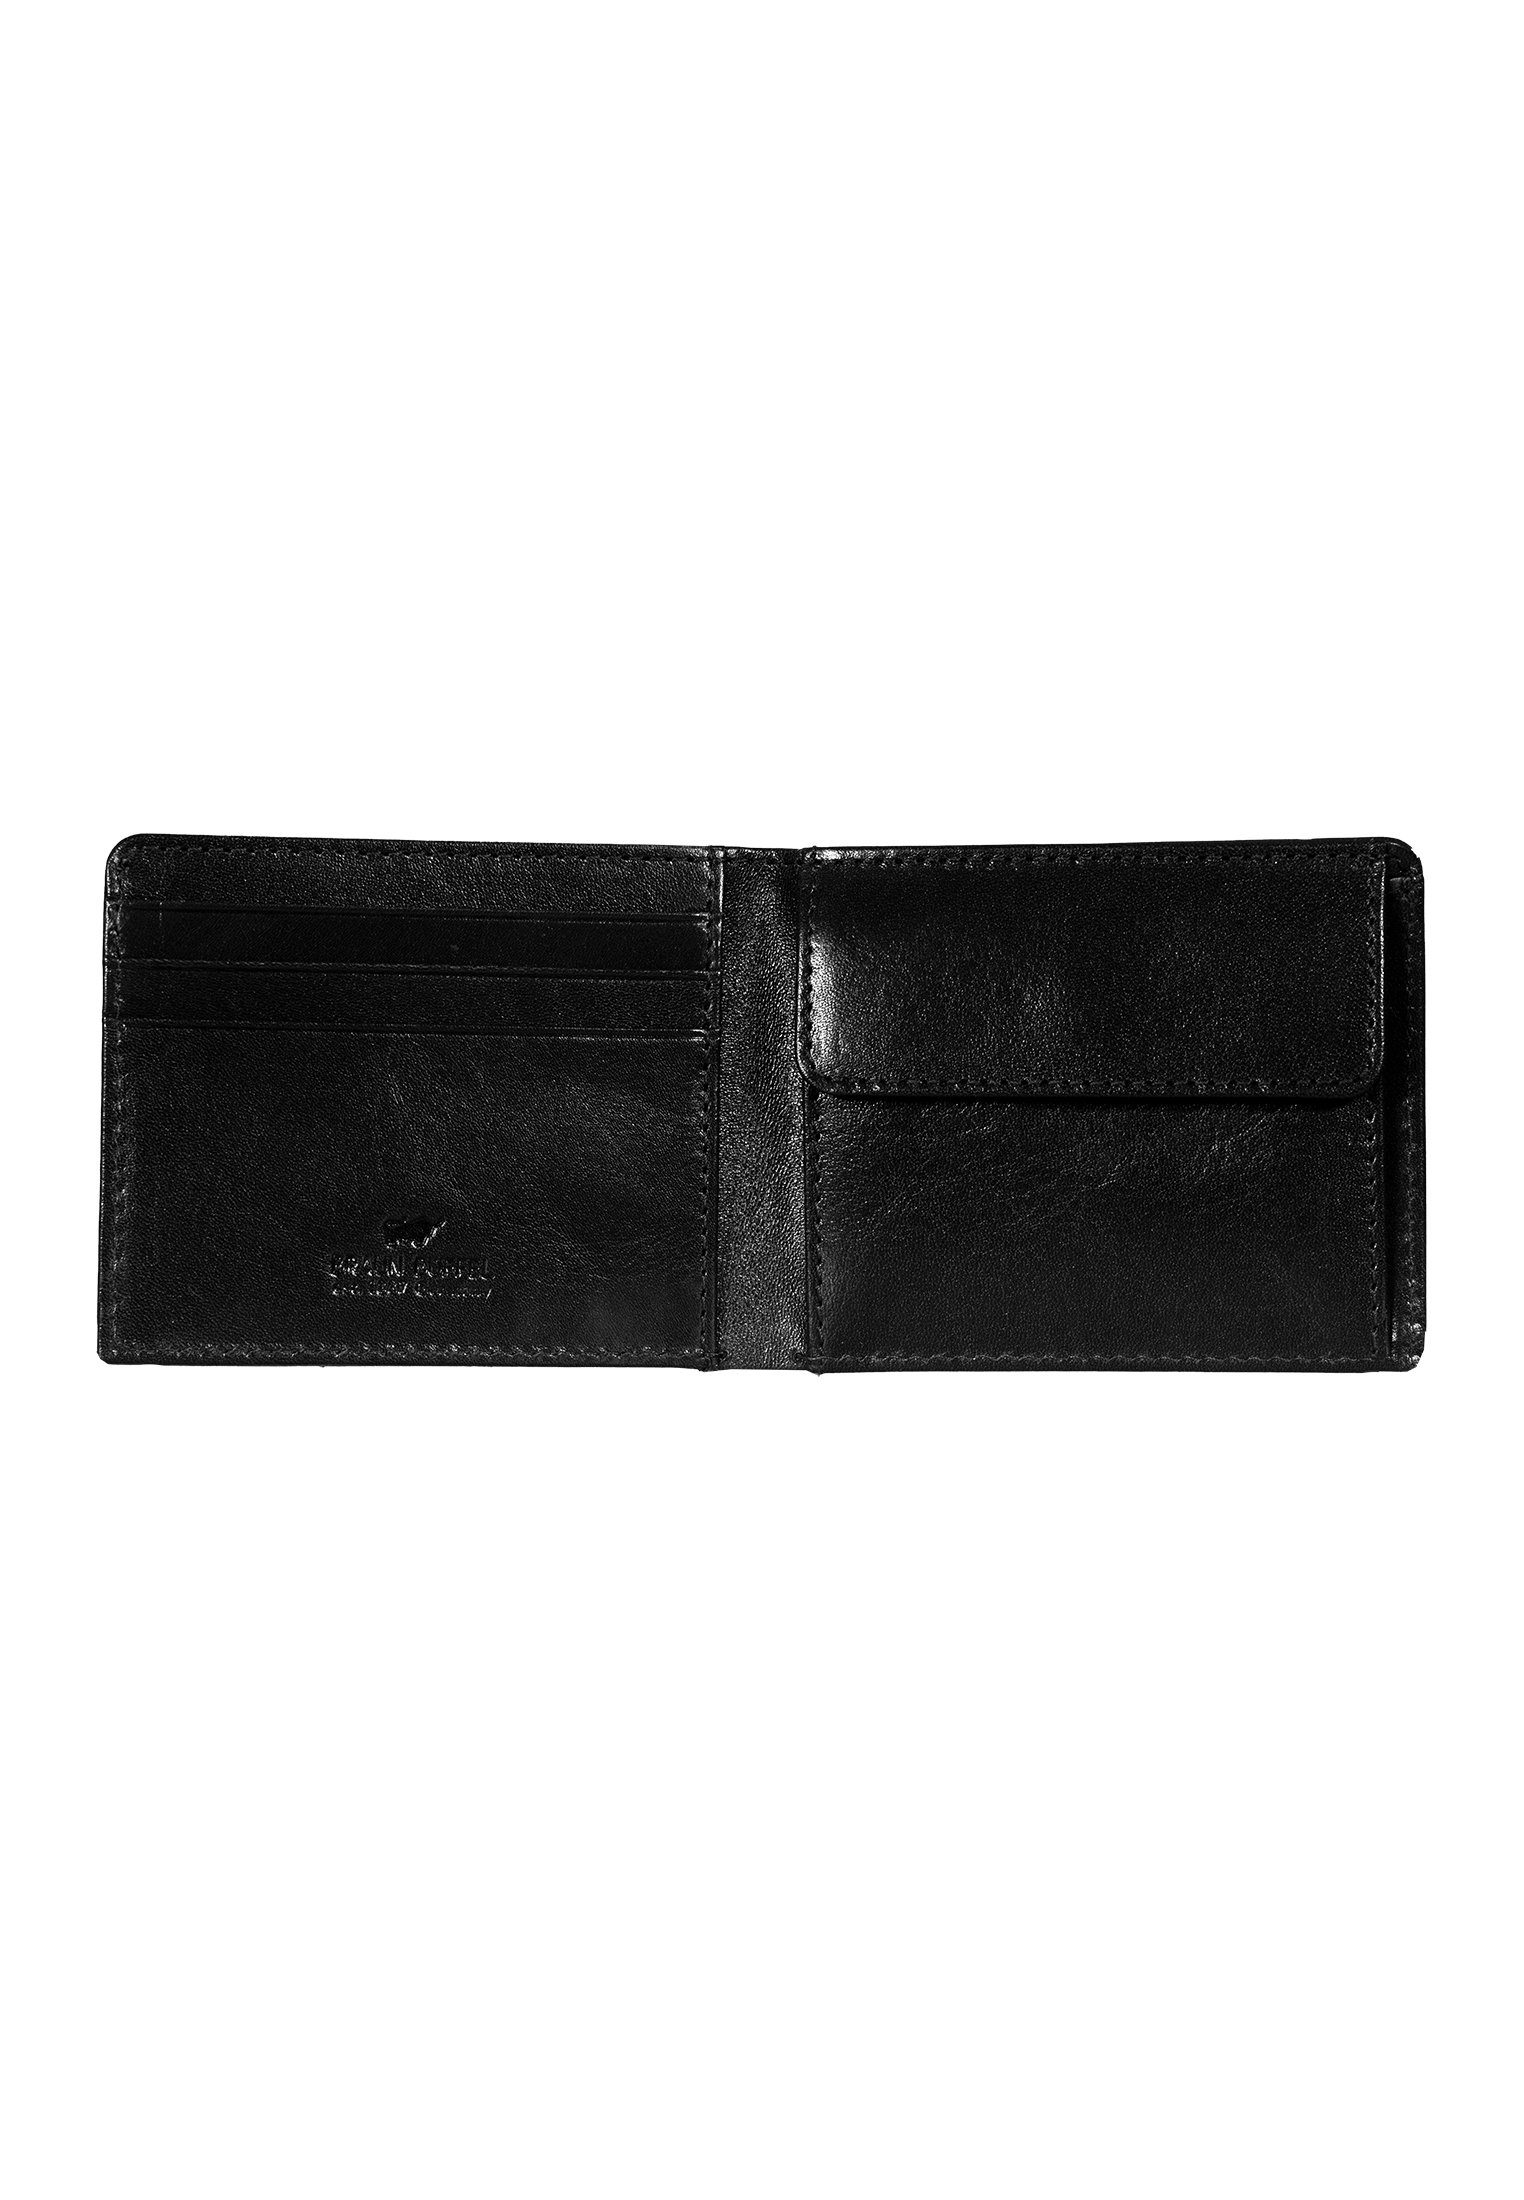 Braun Büffel Geldbörse COUNTRY Scheinfach schwarz im 3+3CS, Kartenfächern 3 RFID mit Geldbörse